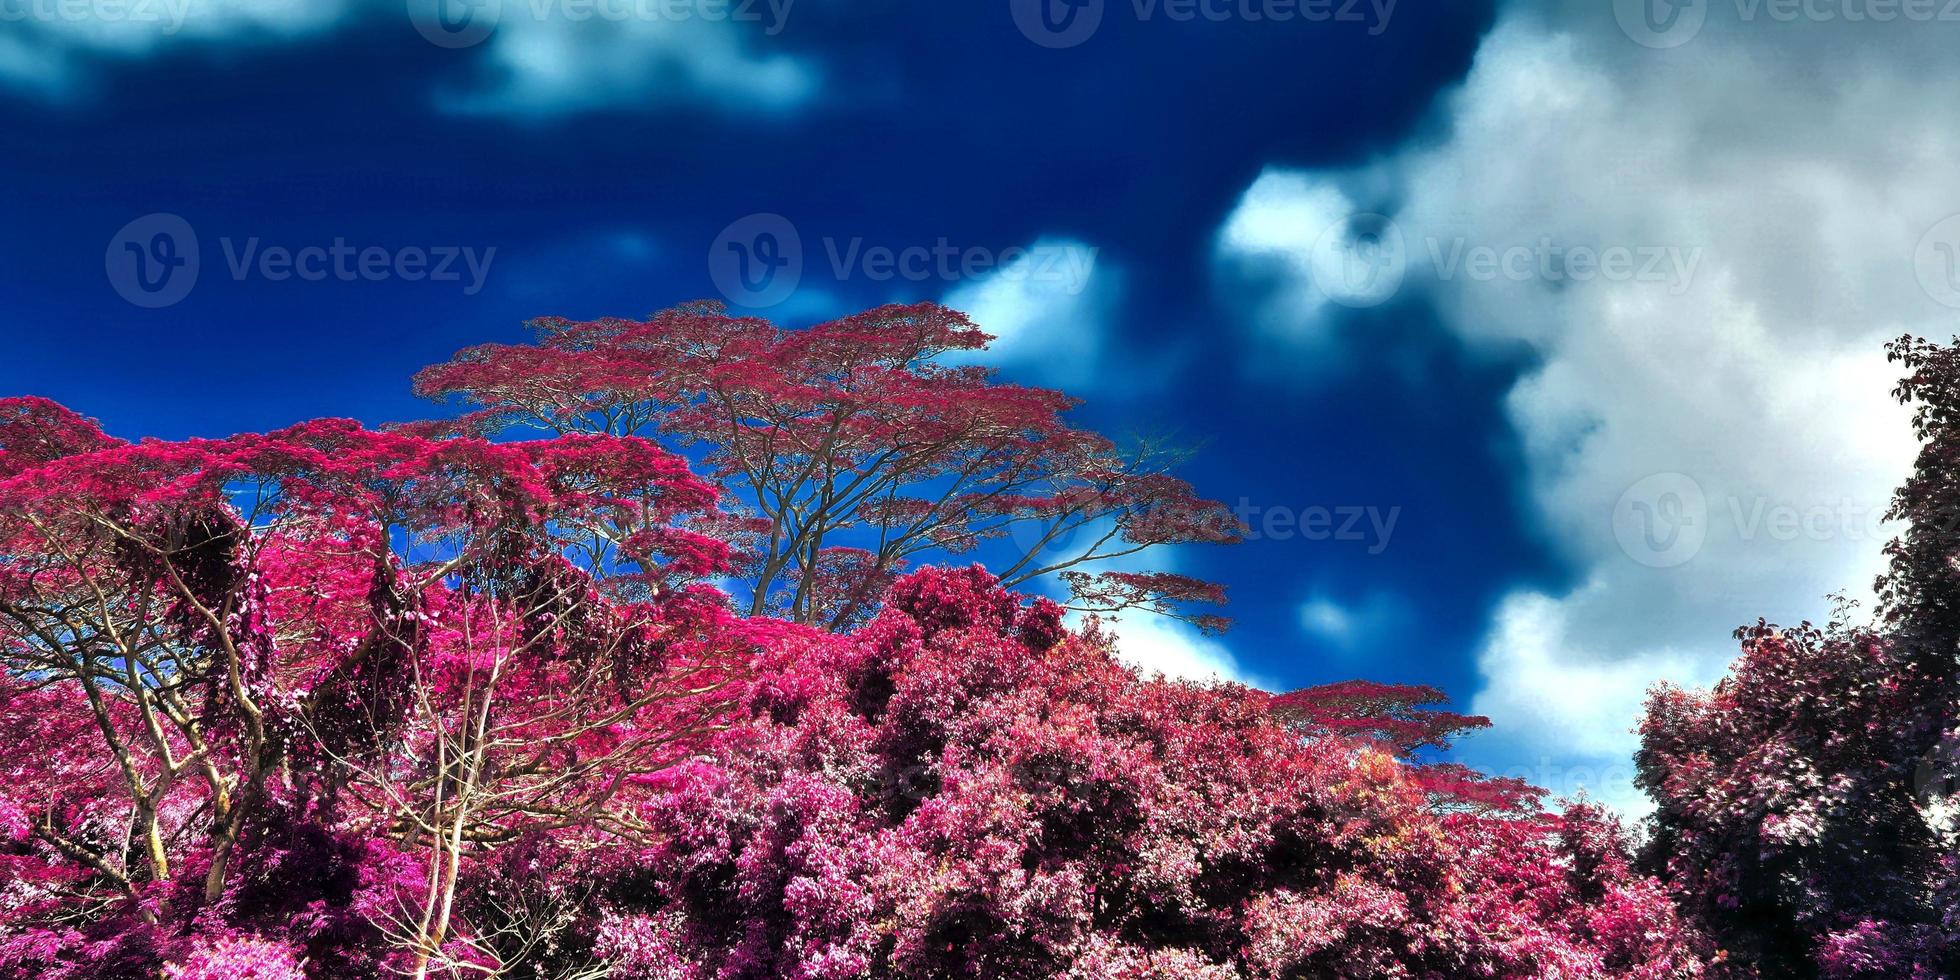 belas fotos infravermelhas rosa e roxas de palmeiras tropicais nas seychelles